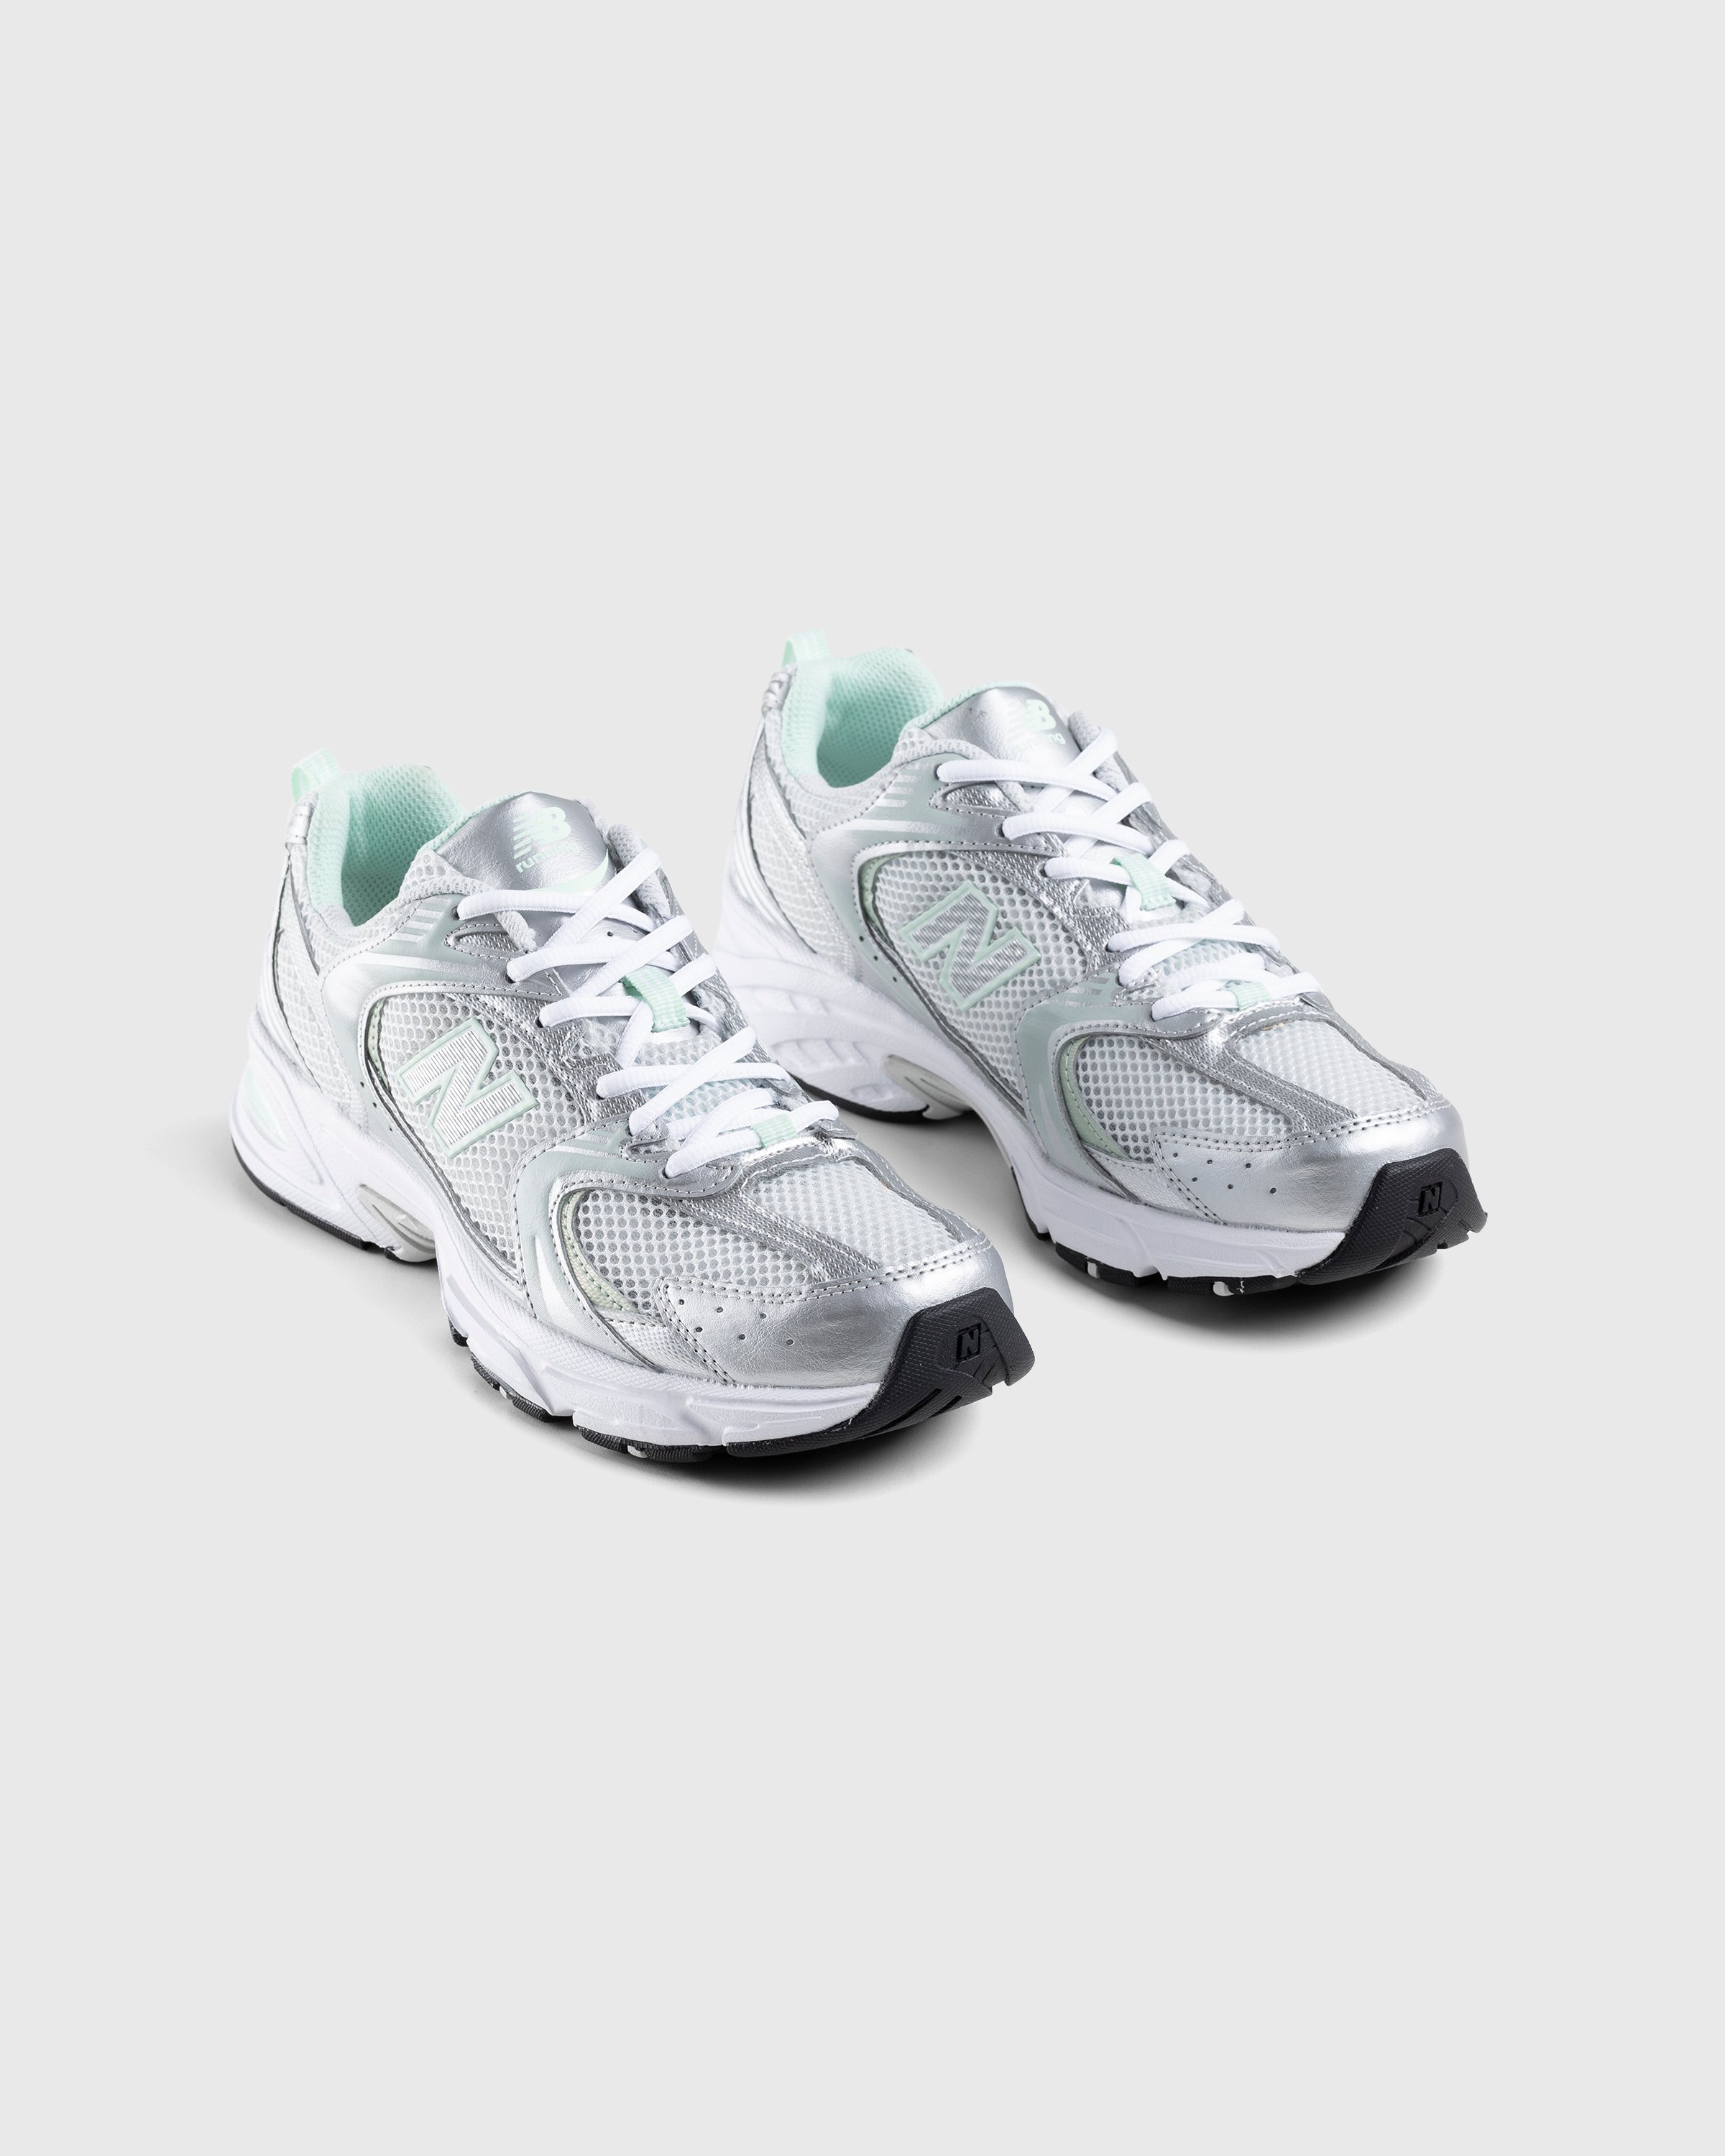 New Balance - MR530ZEL Cosmic Jade - Footwear - Silver - Image 3